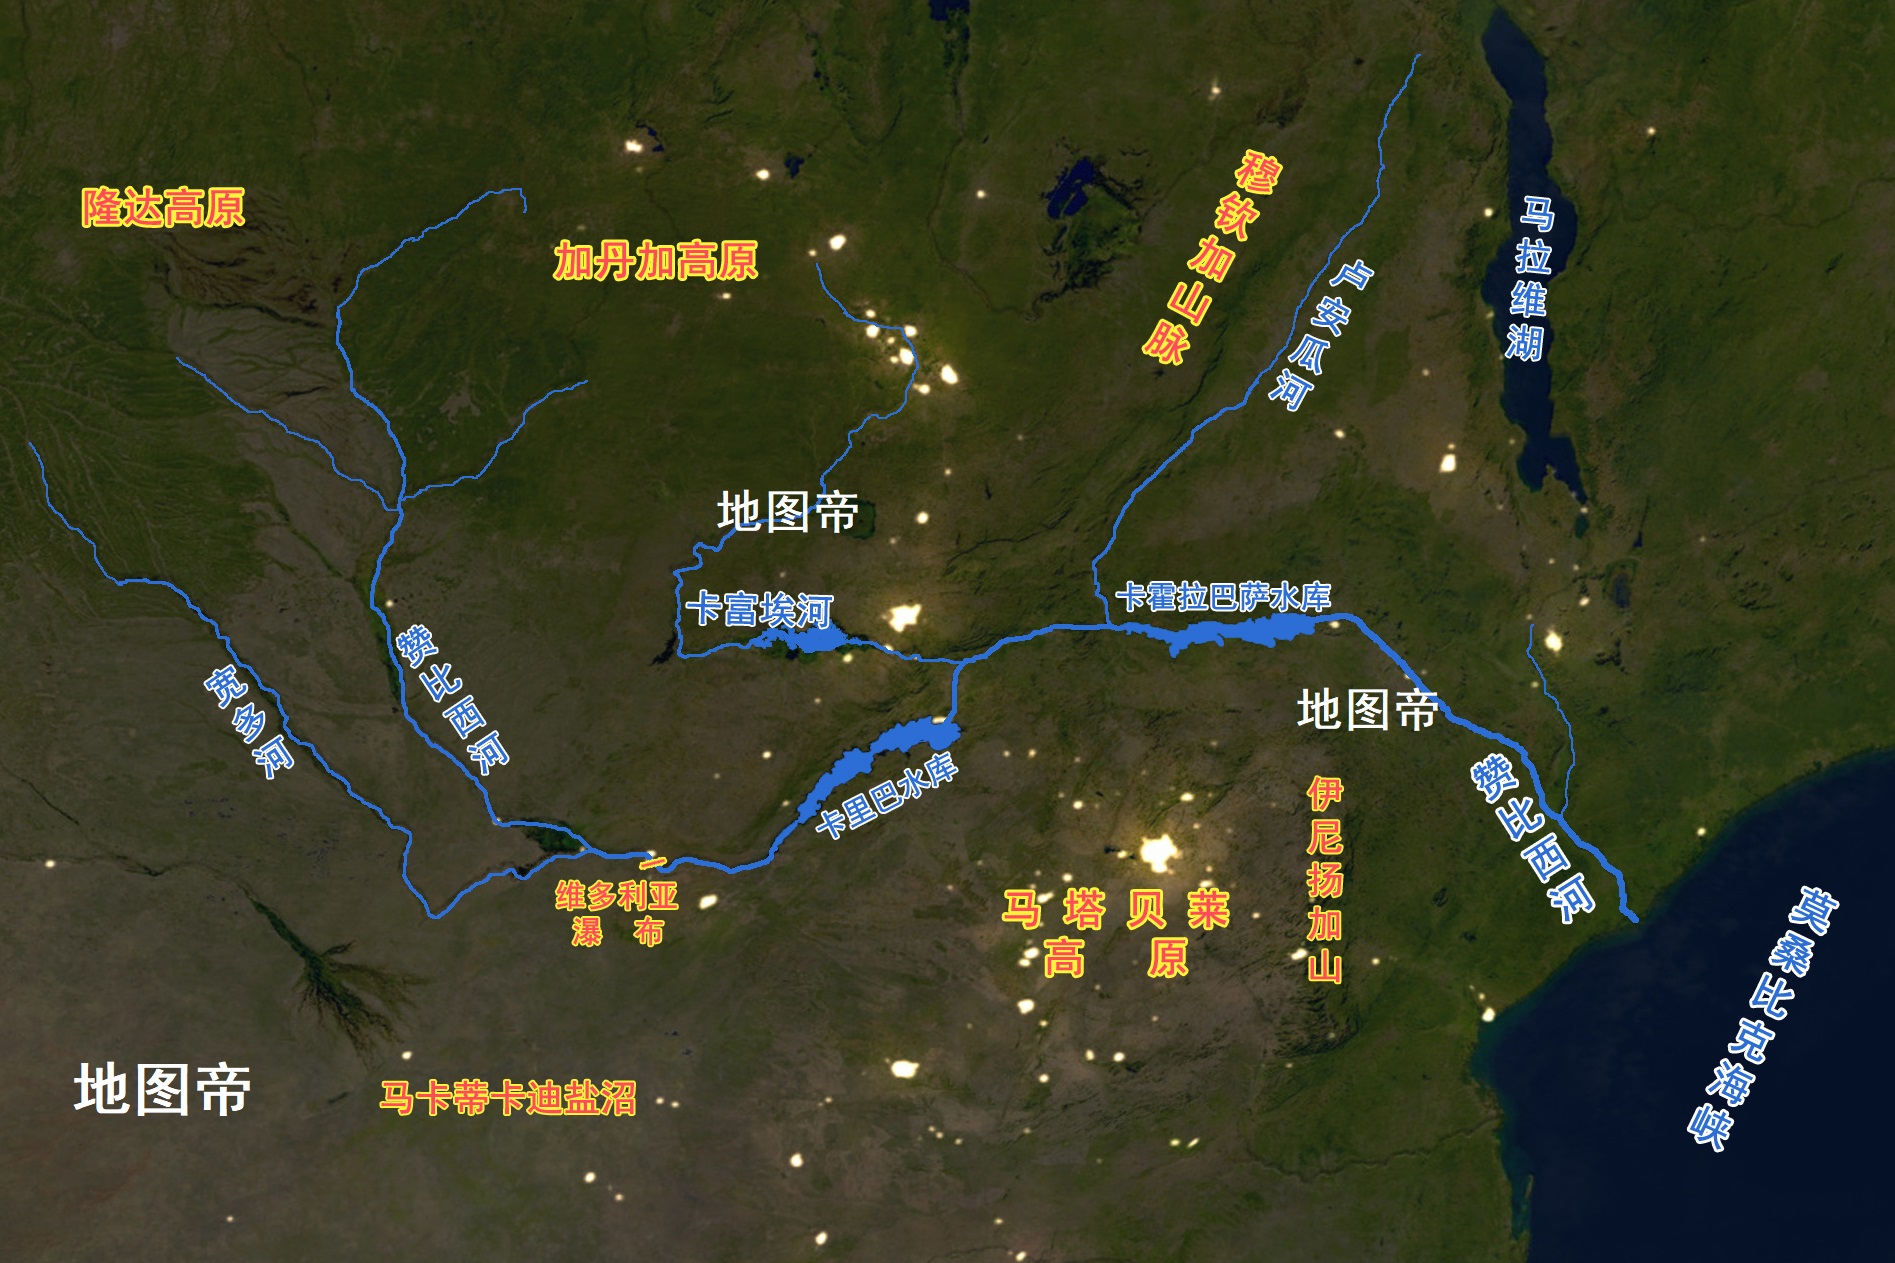 赞比西河地图图片